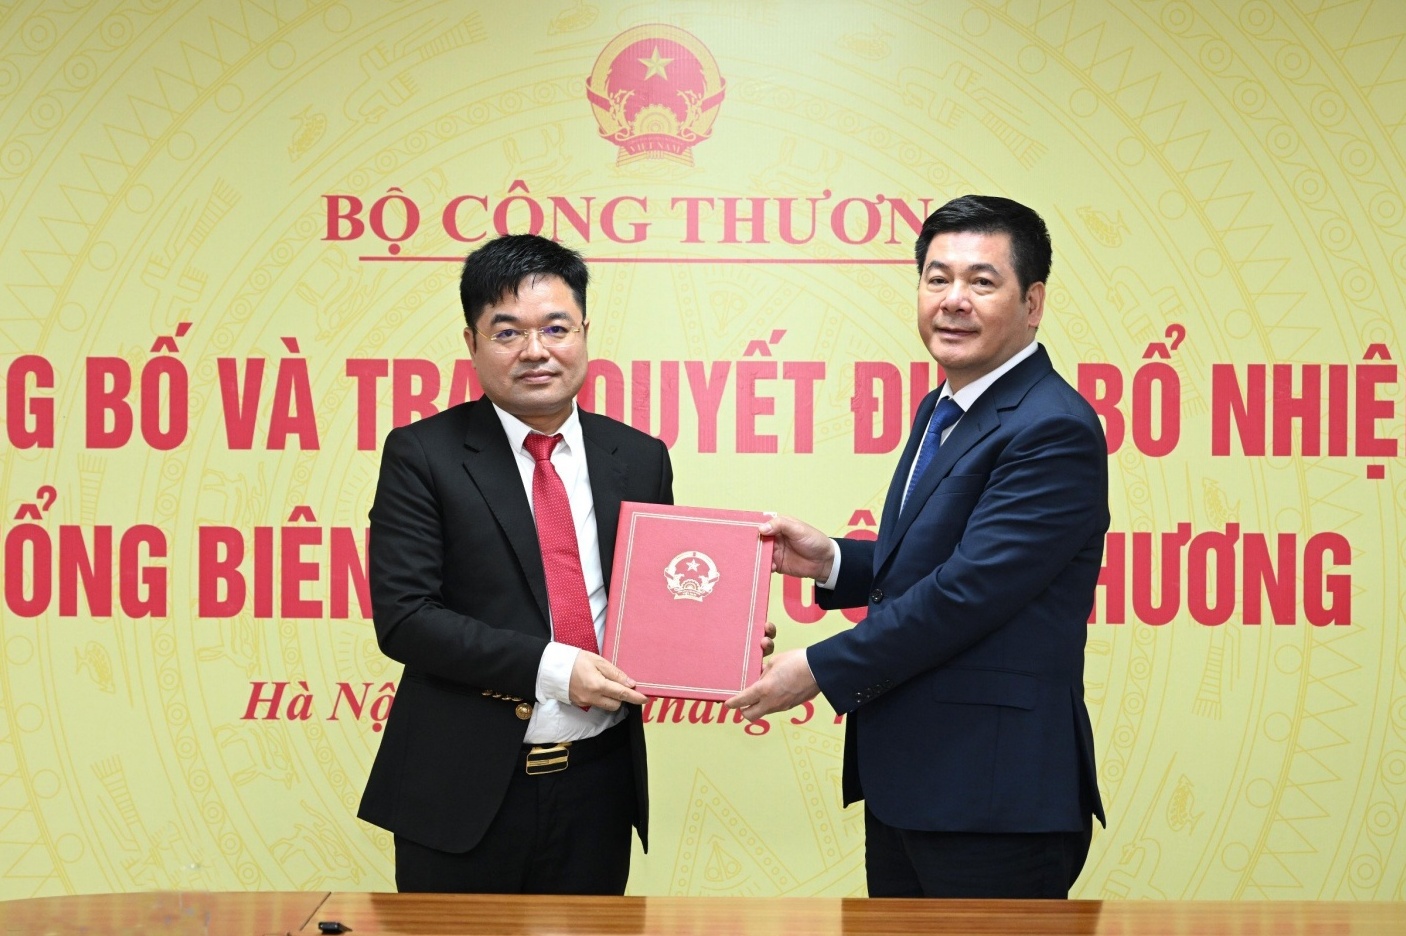 Nhà báo Nguyễn Văn Minh được bổ nhiệm Tổng Biên tập Báo Công Thương